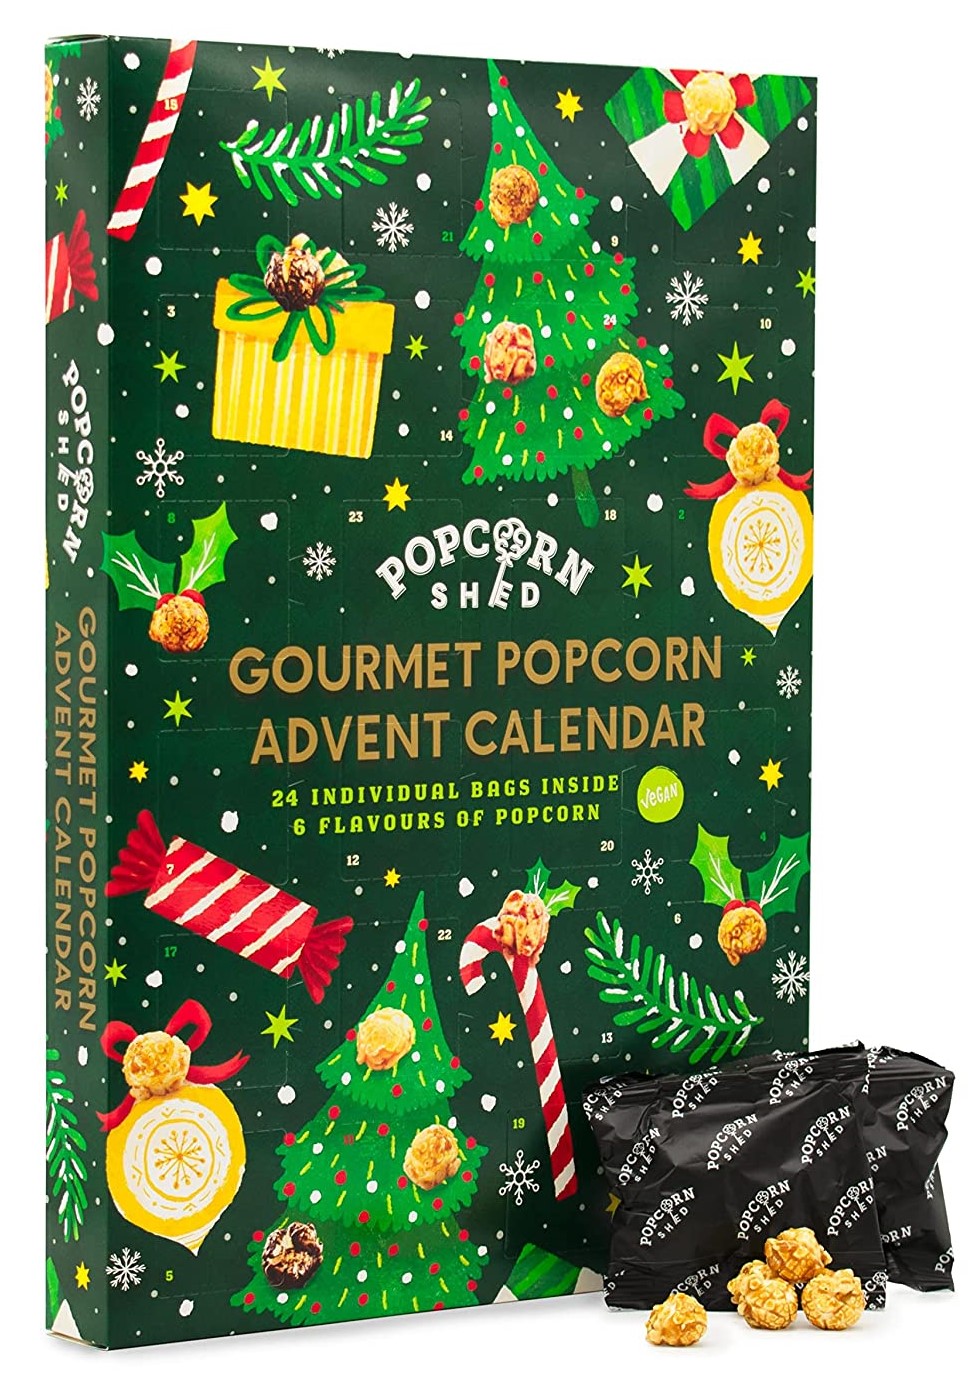 Popcorn Shed Gourmet Adventskalender 2022